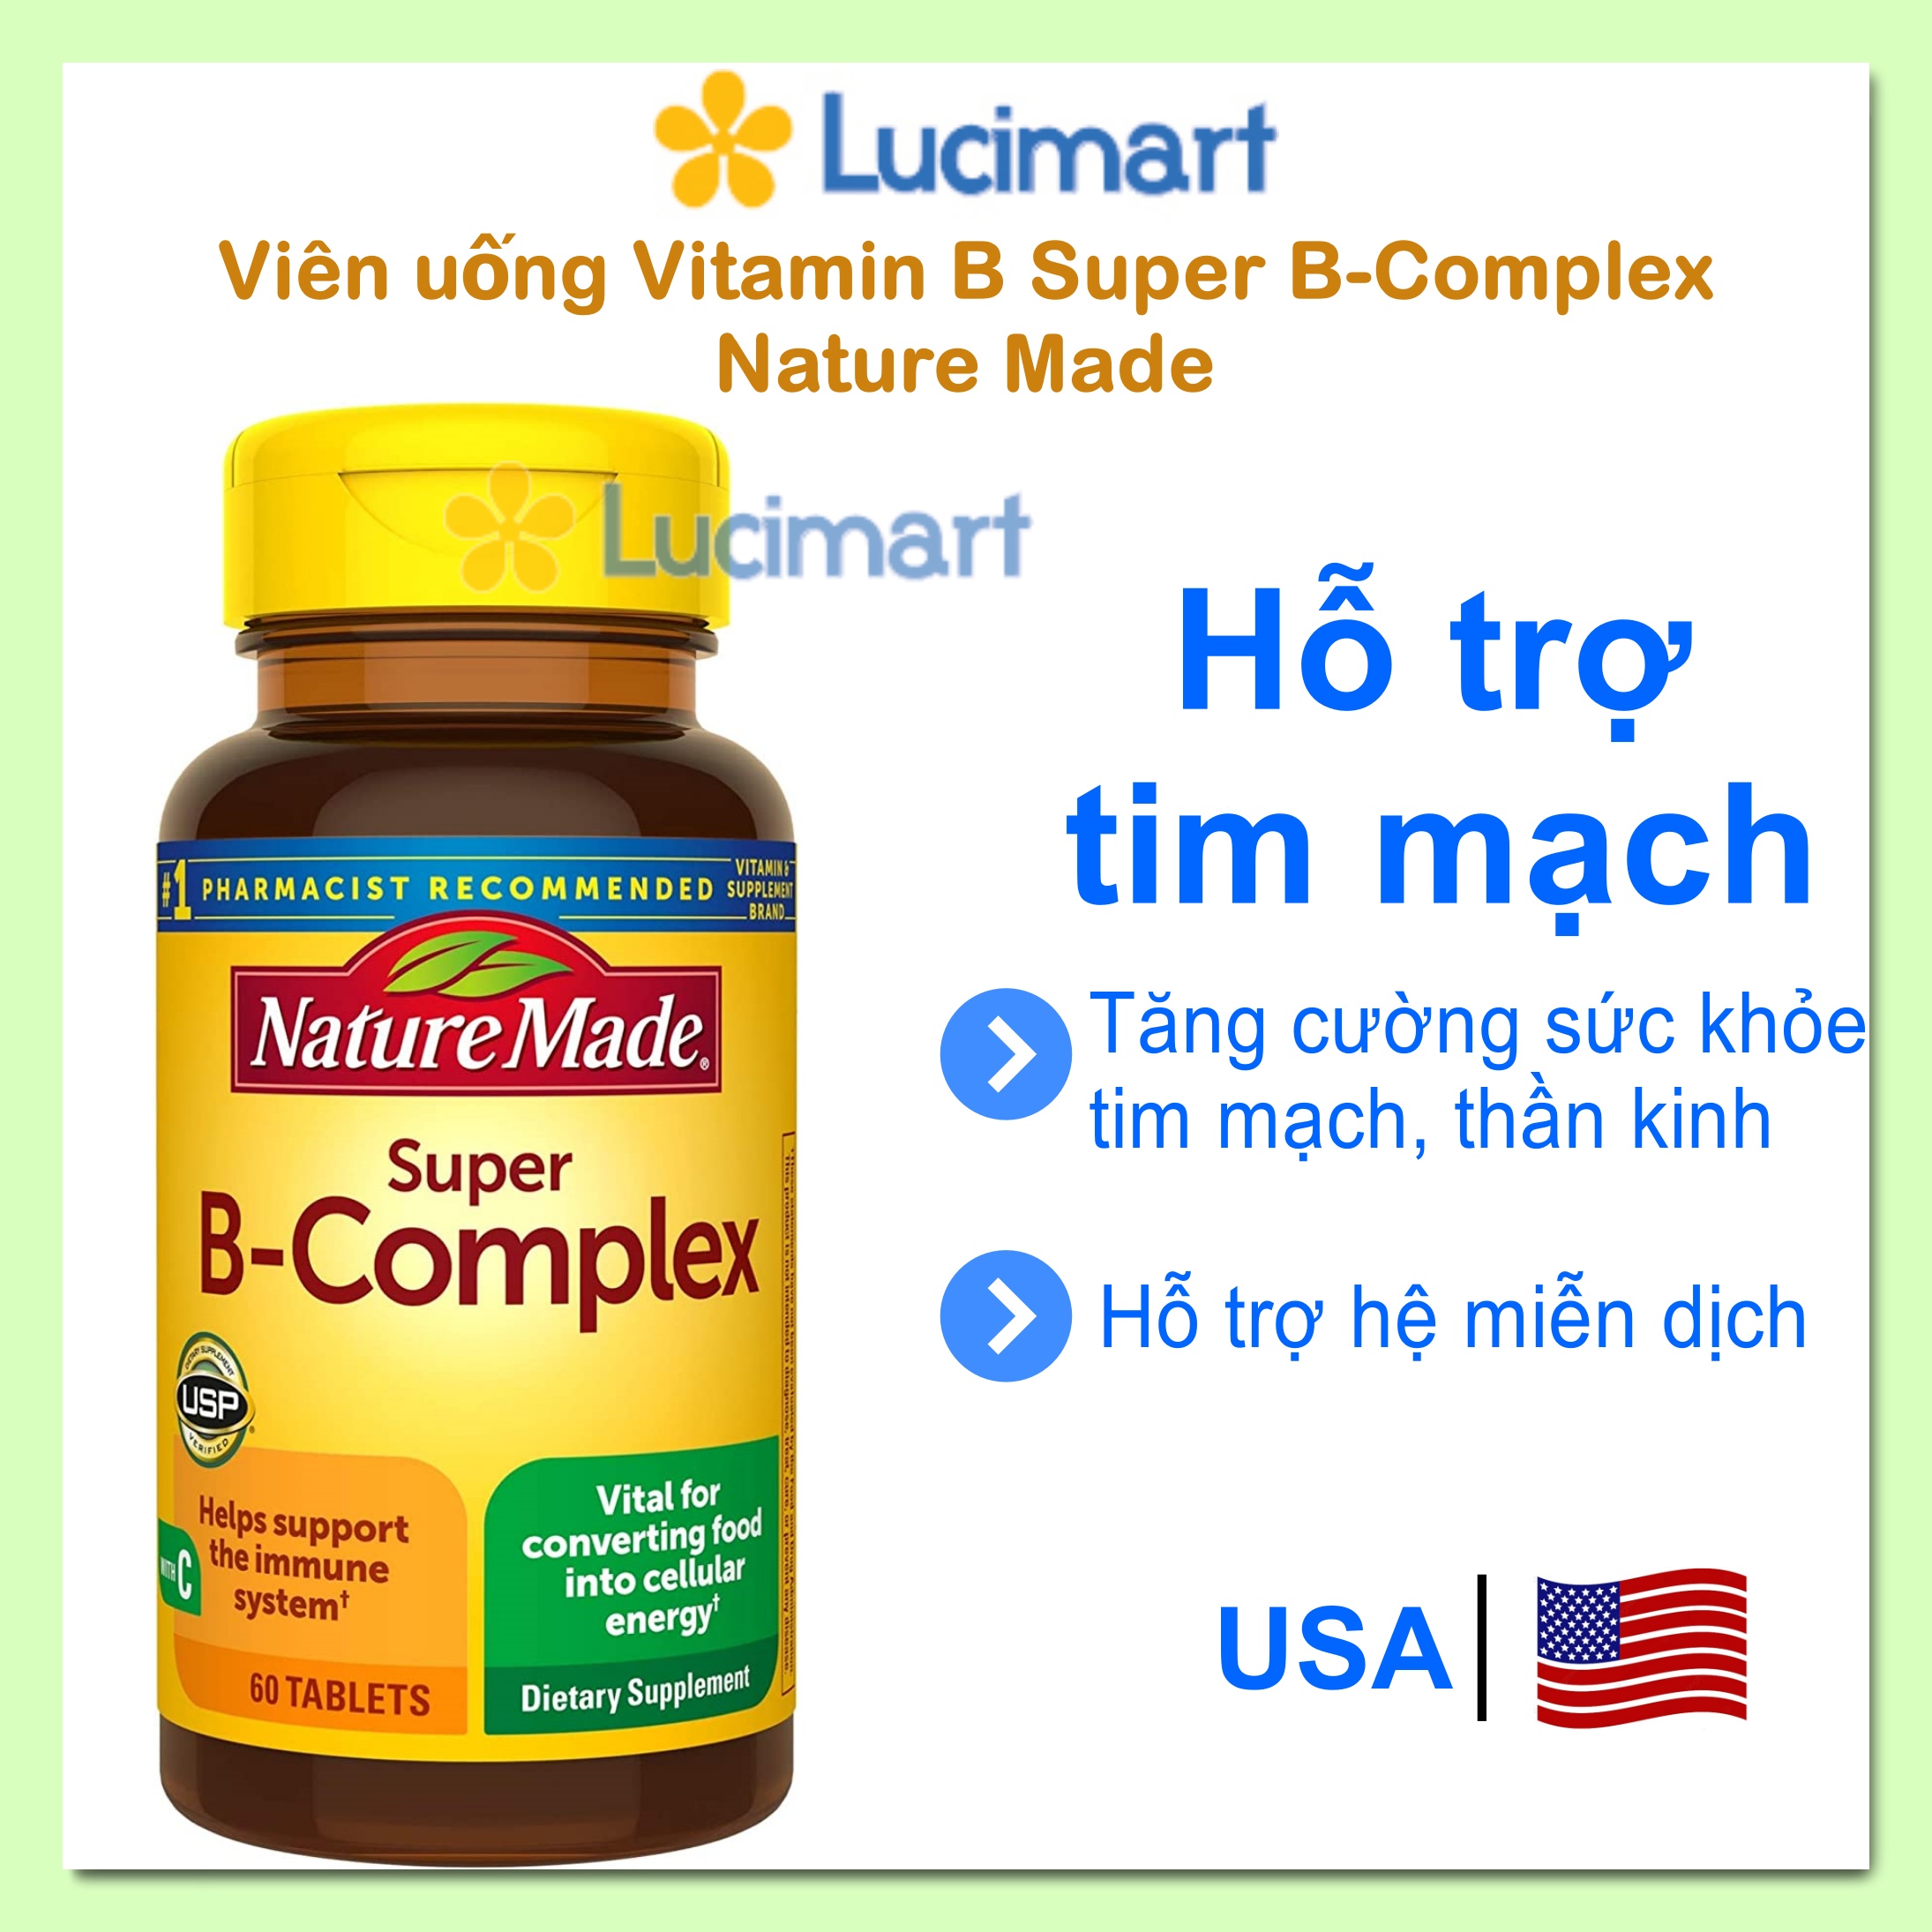 Viên uống Vitamin B Super B-Complex Nature Made Hàng Mỹ hạn dùng 12-2024